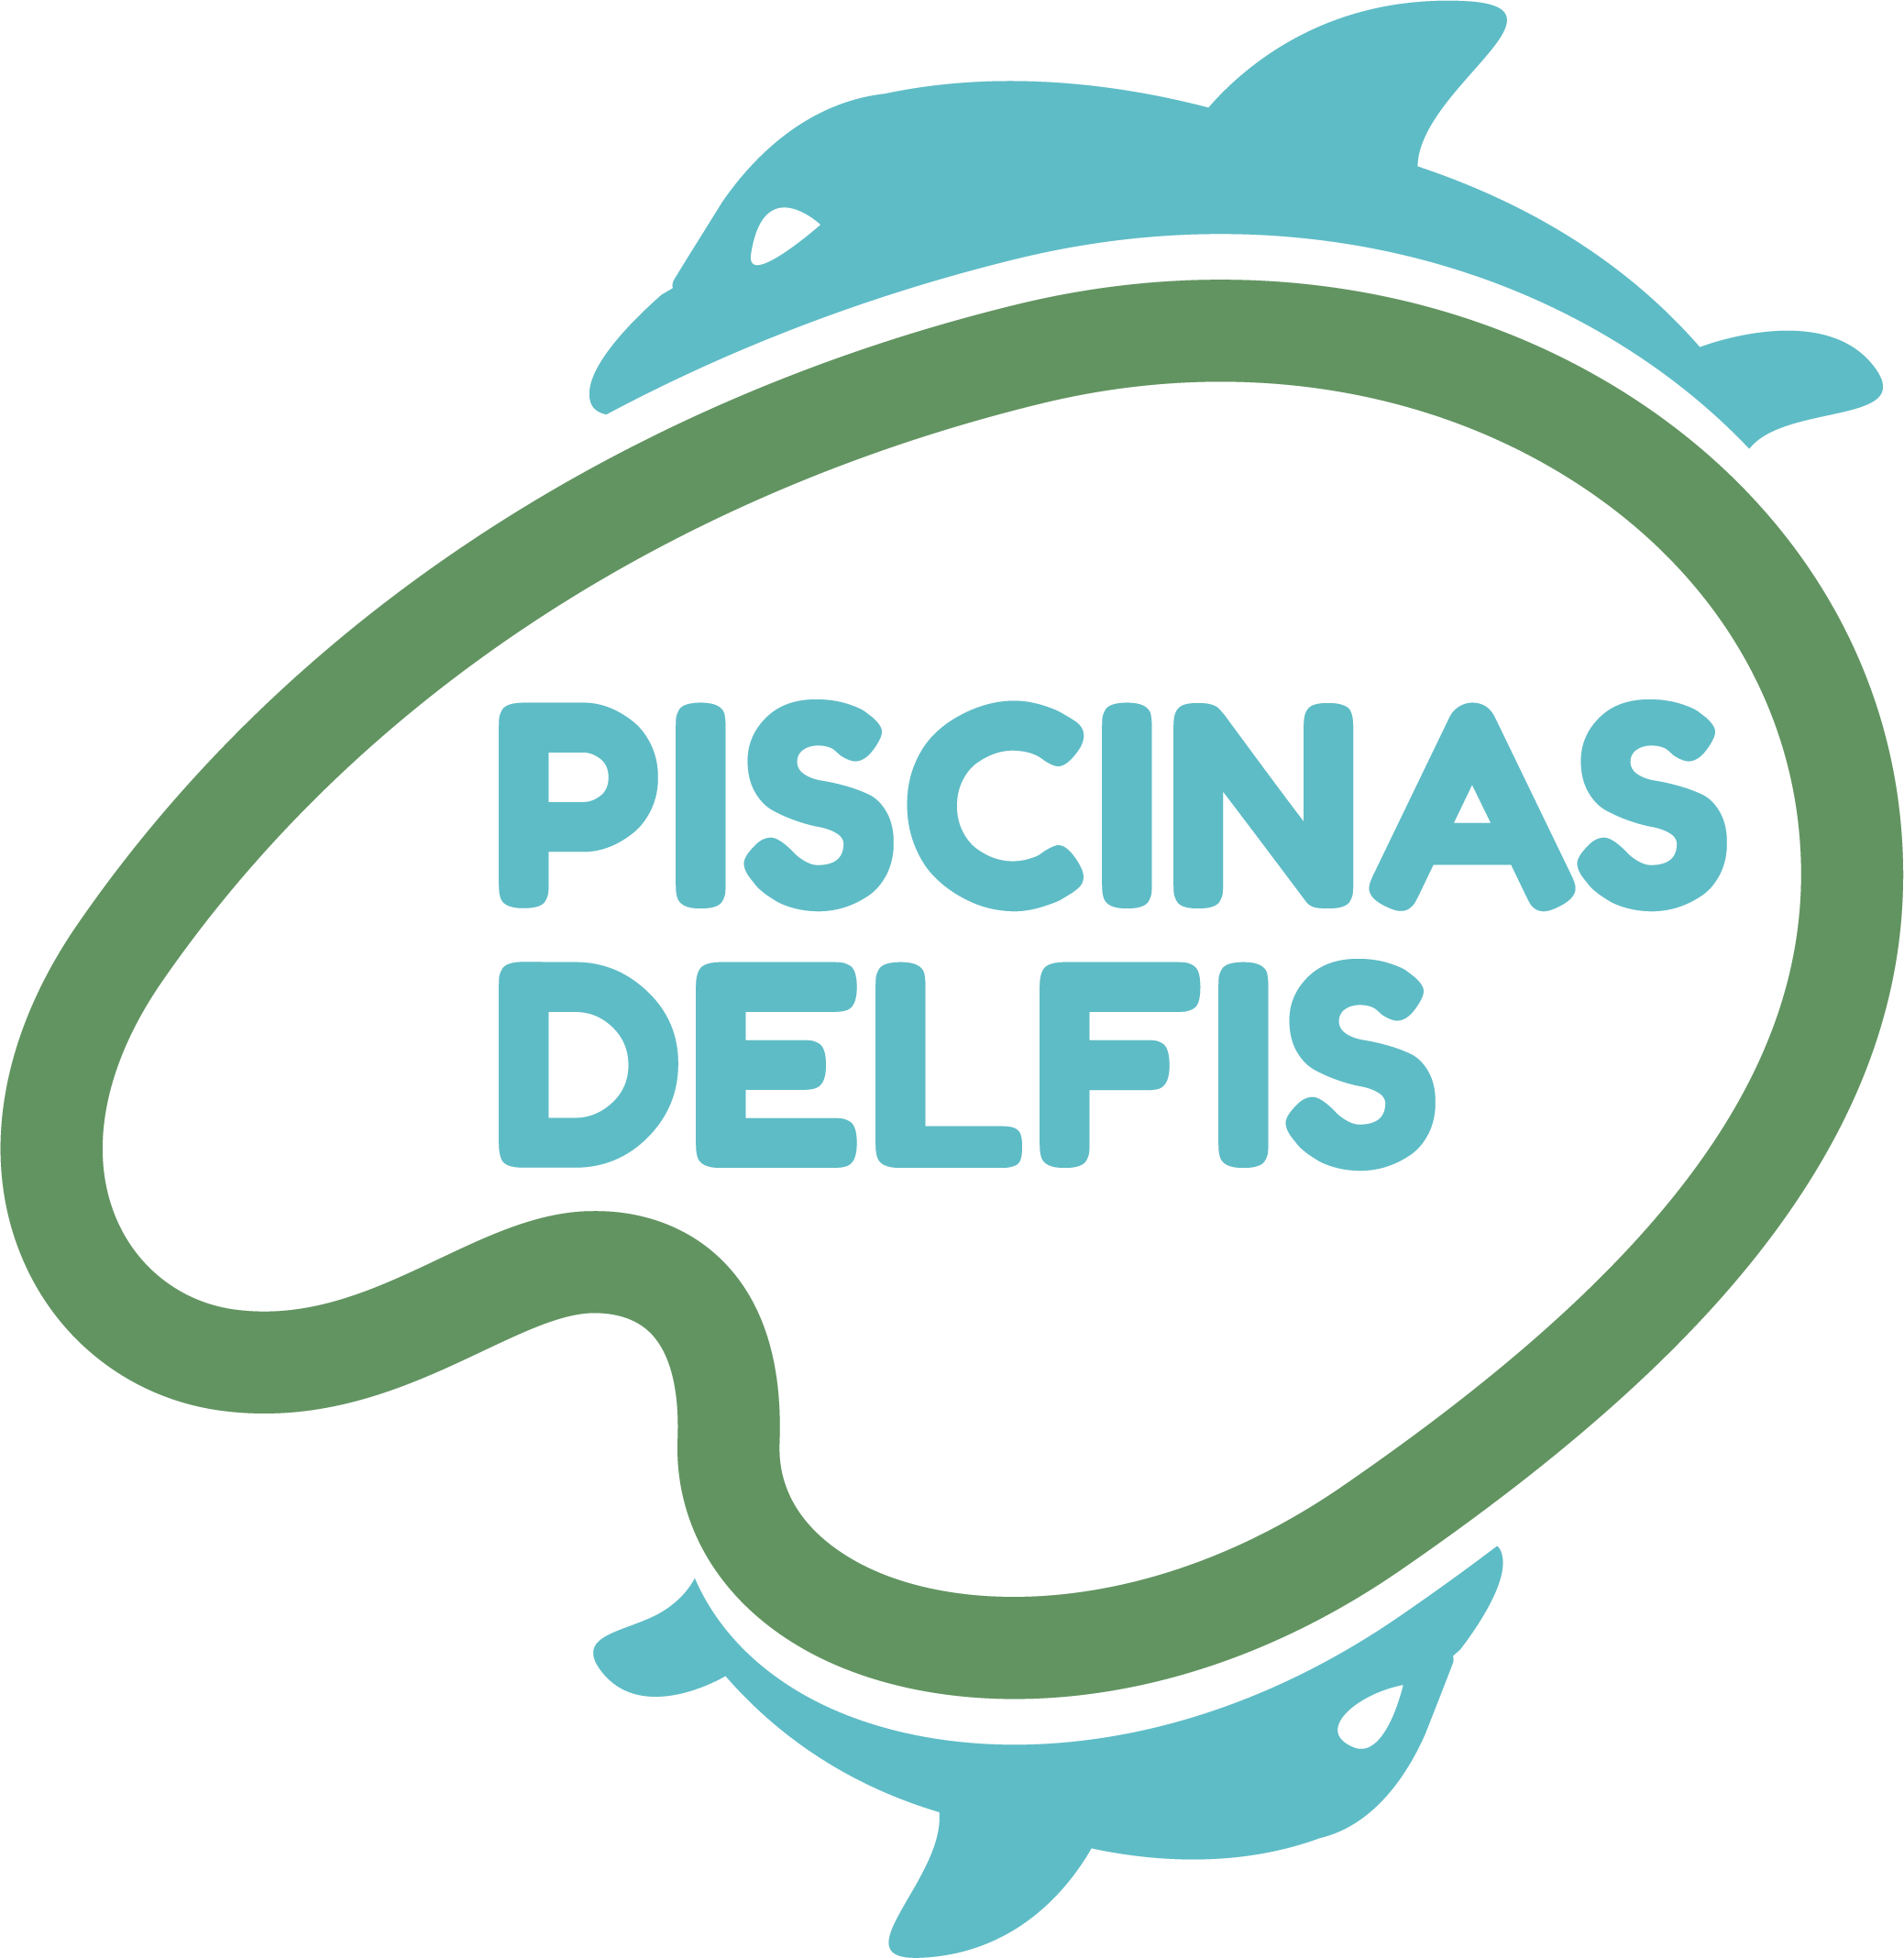 Piscinas Delfis